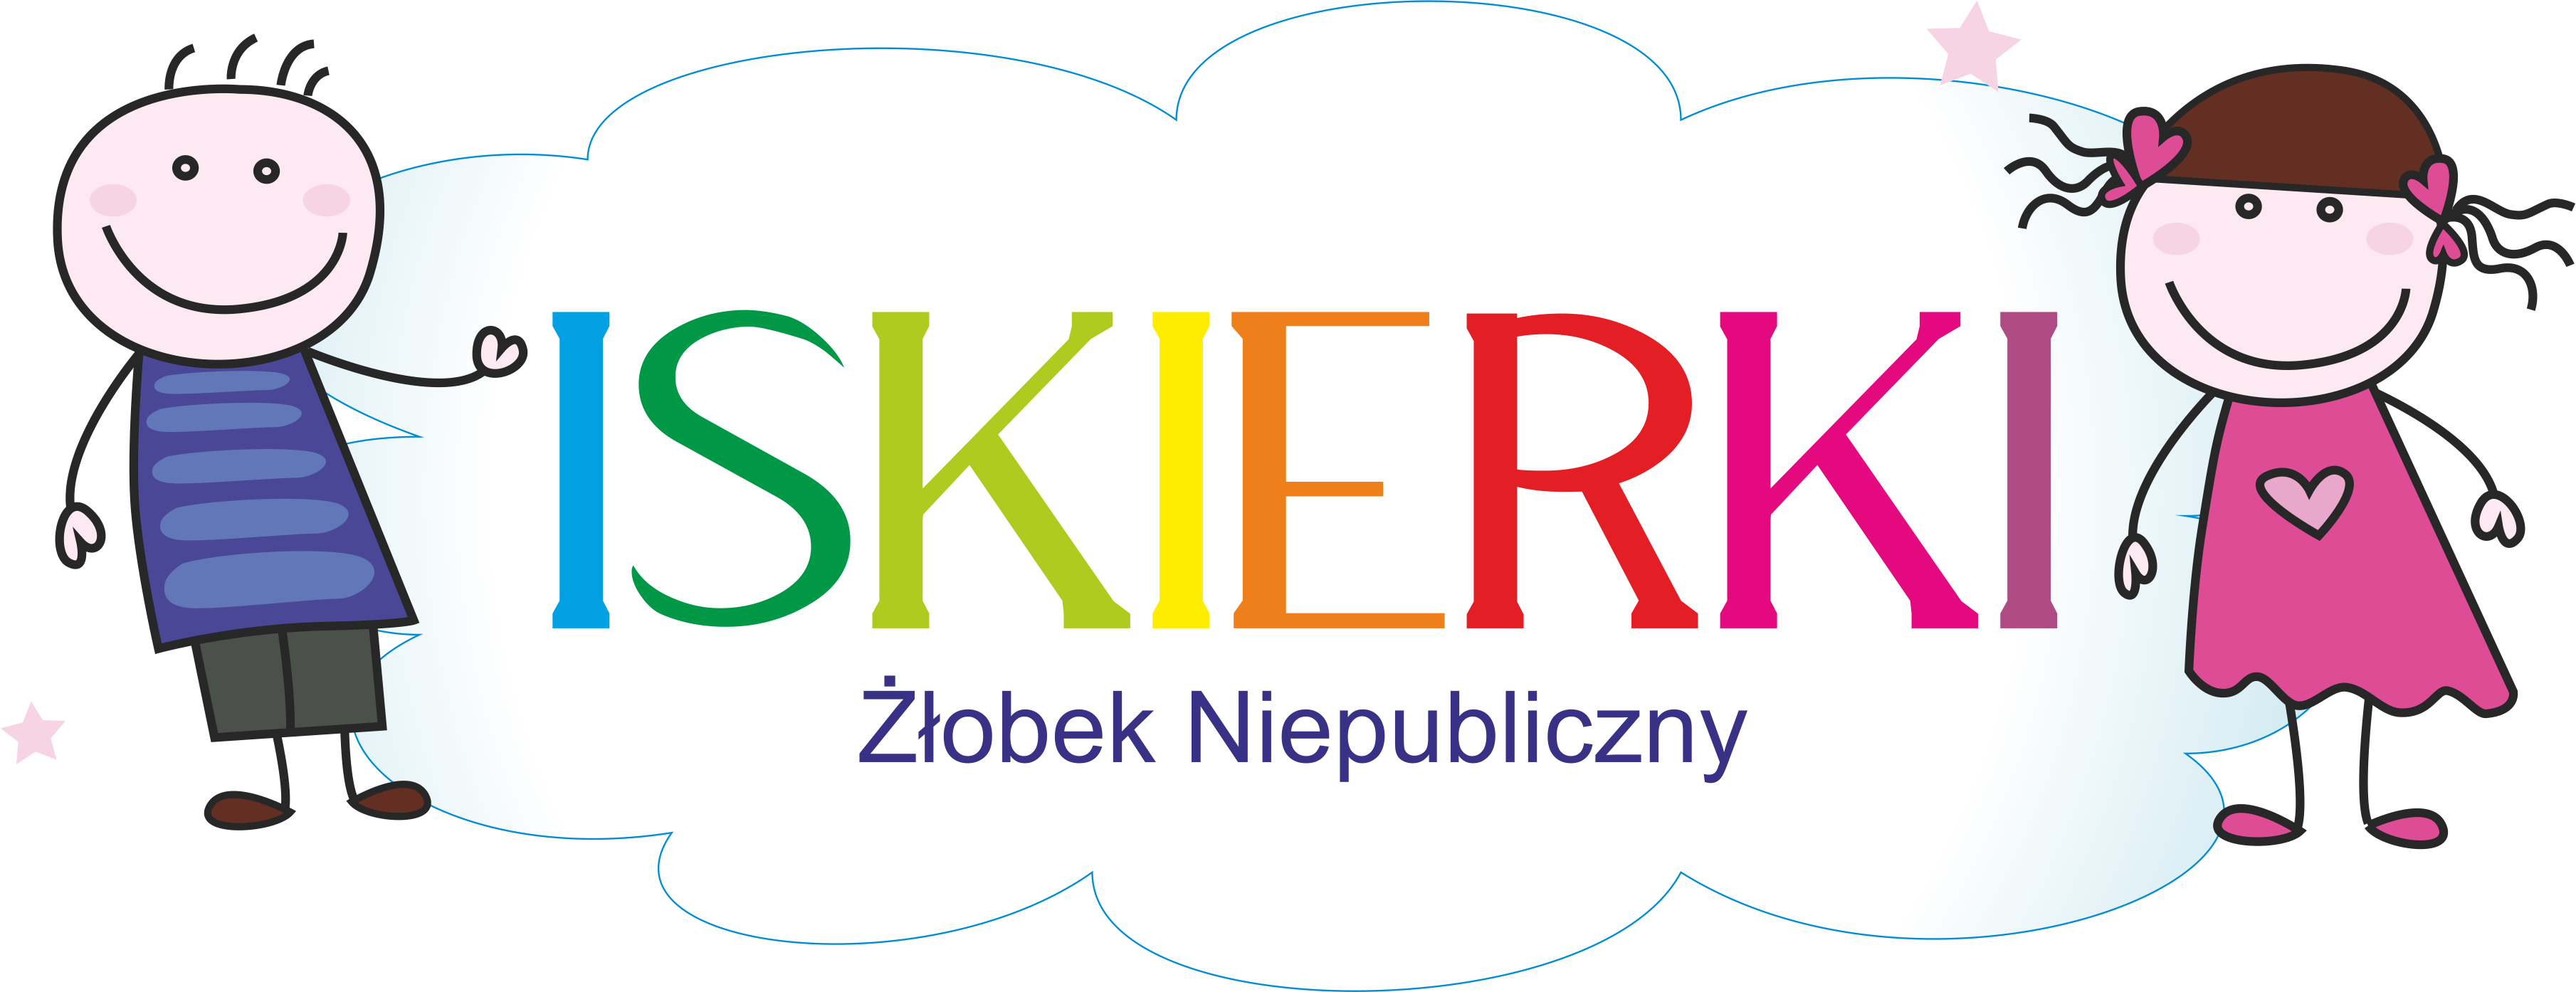 logo firmy Żłobek Niepubliczy Iskierki